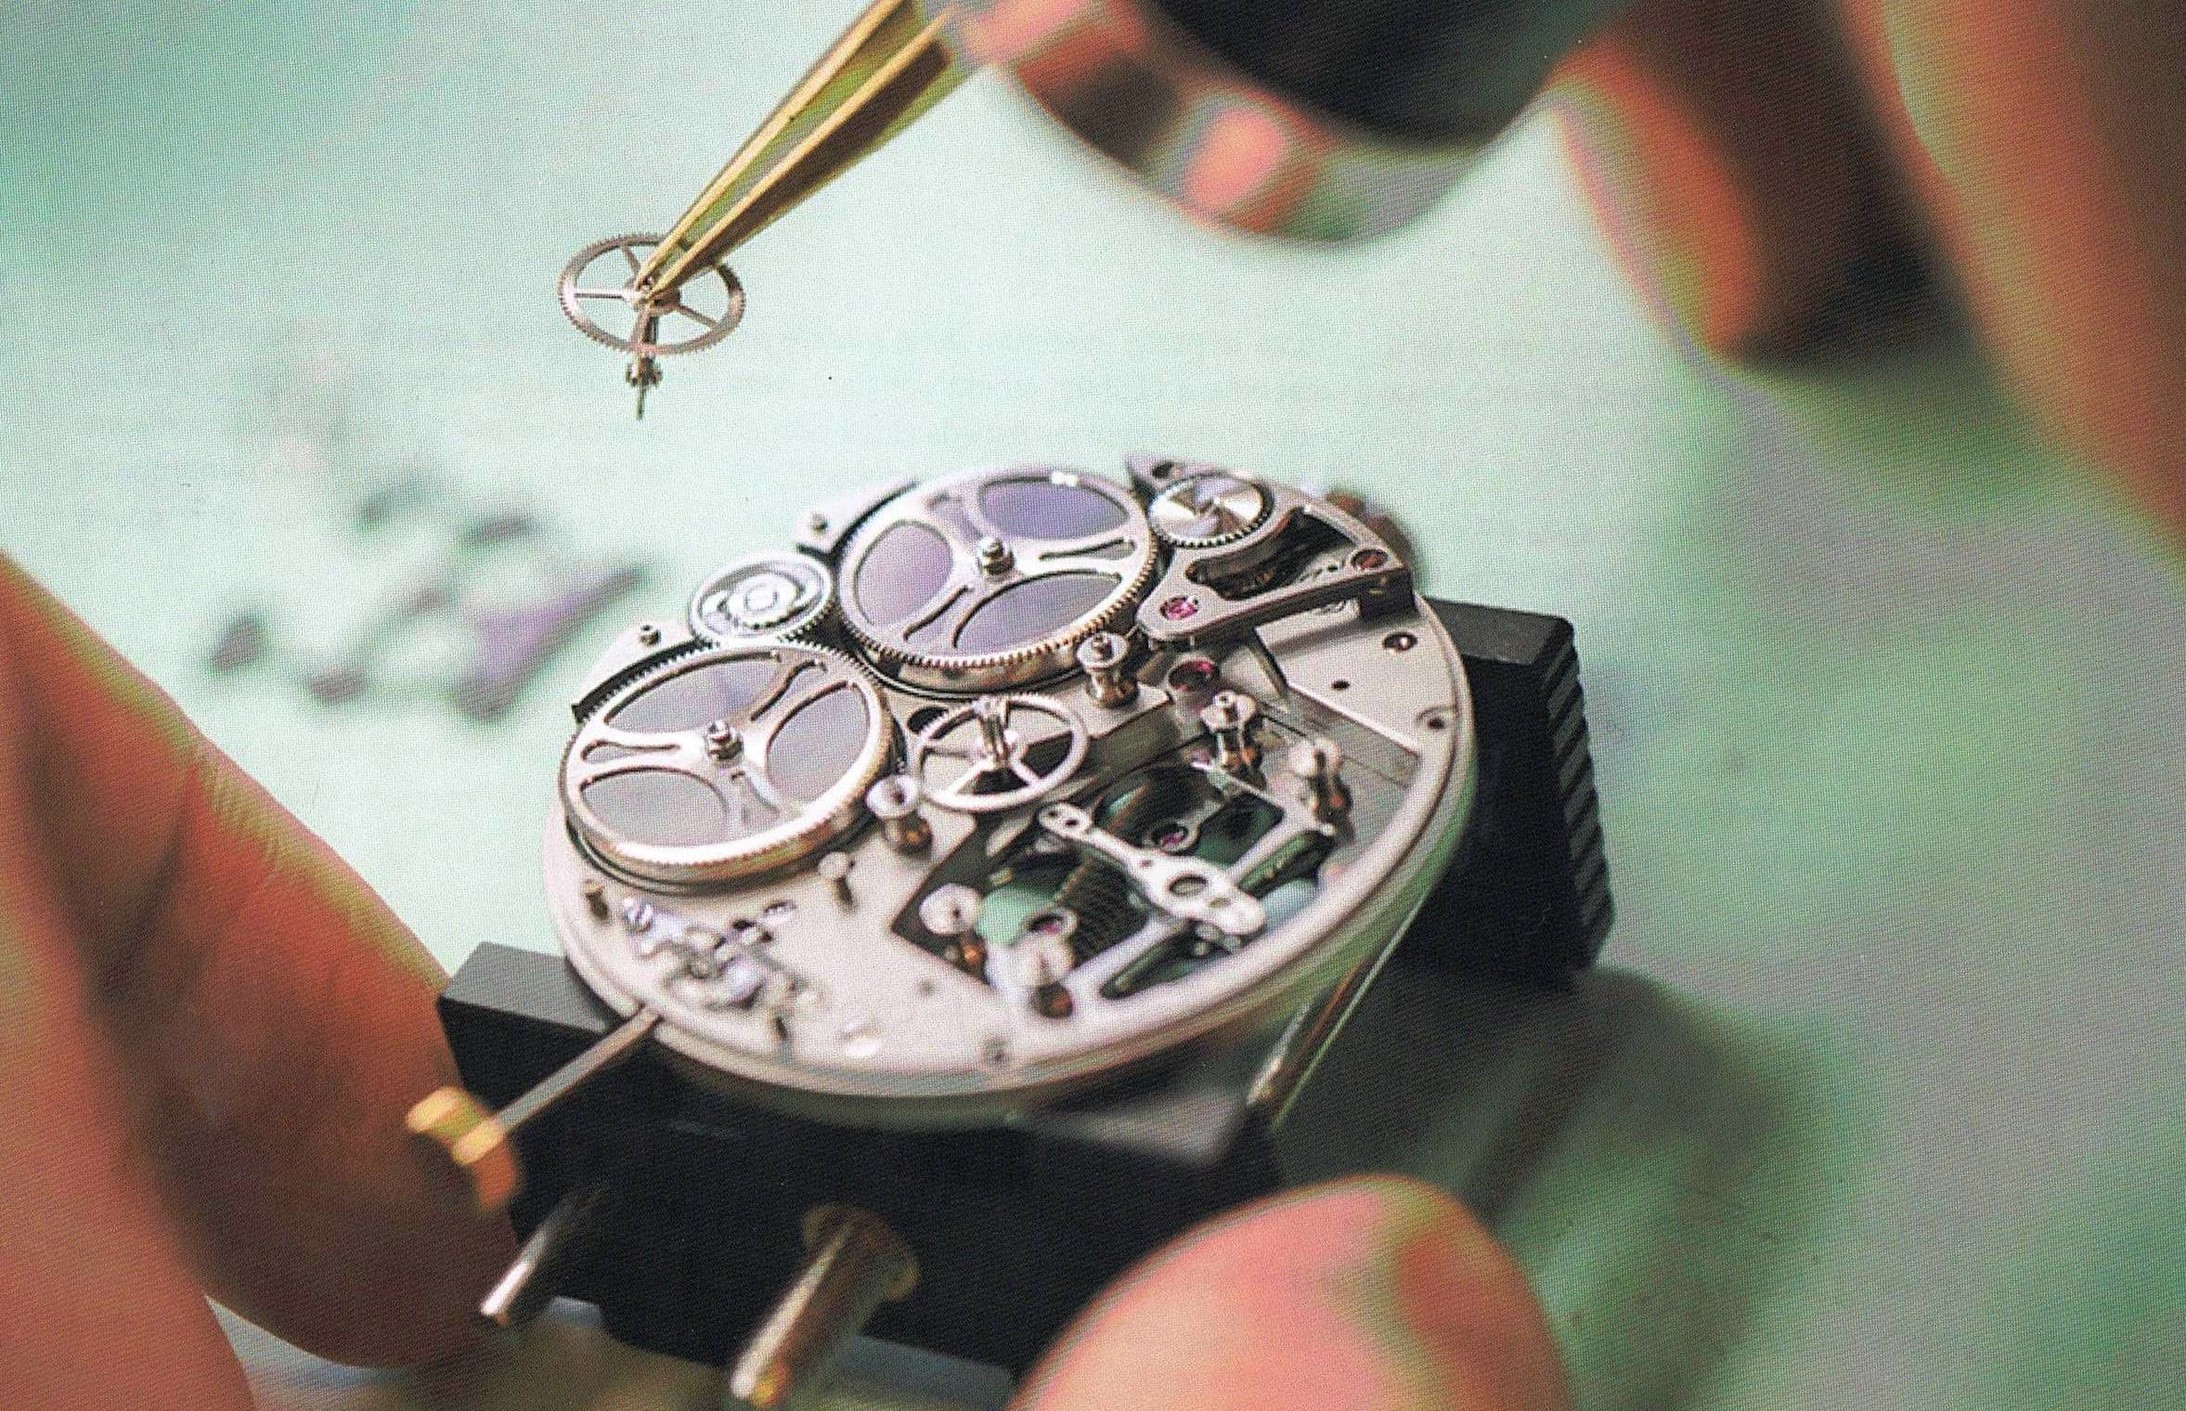 Ein Uhrwerk setzt sich aus verschiedenen Einzelteilen zusammen, die oft aus verschiedenen Fabriken stammen.
